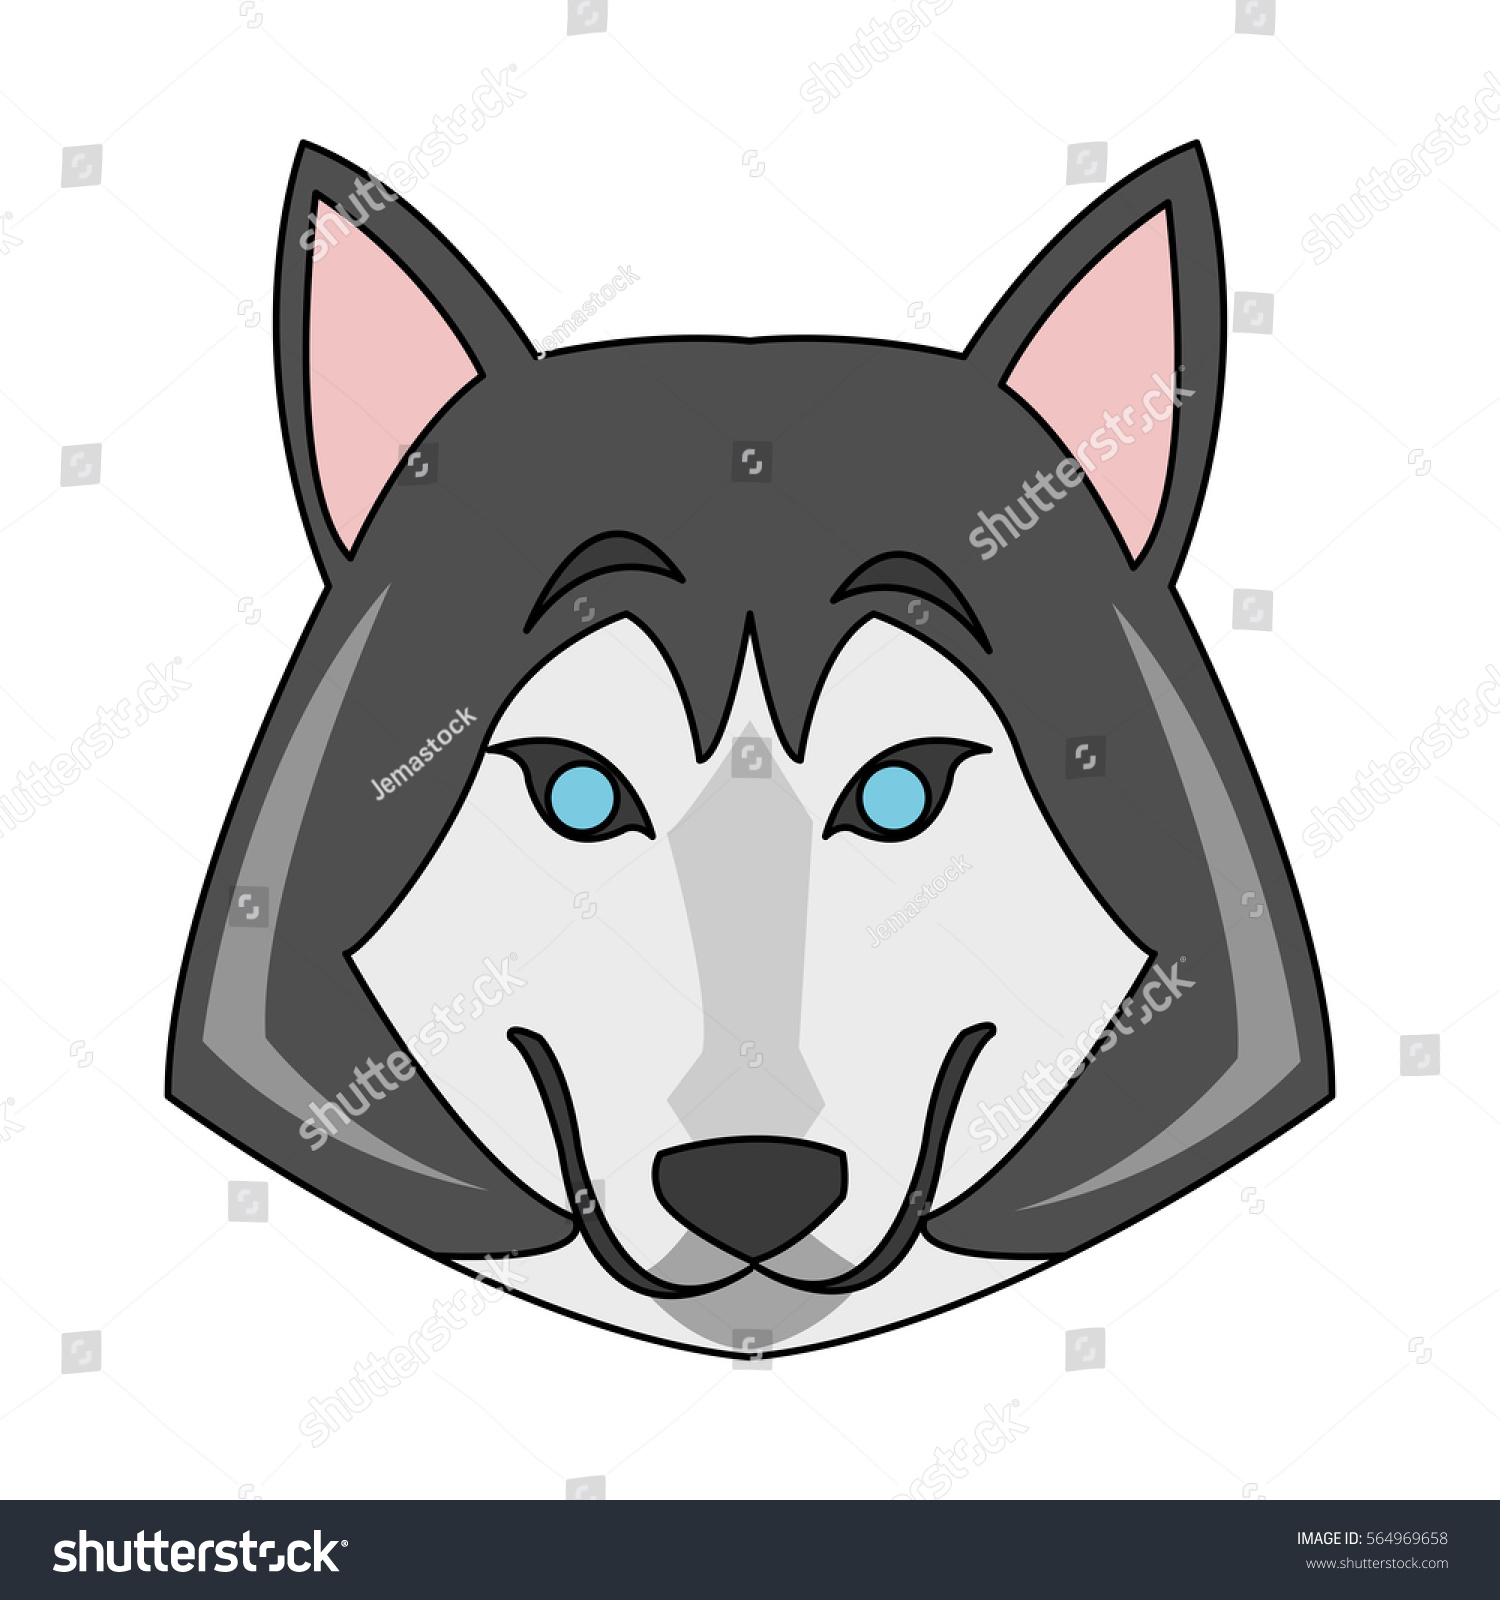 Wolf Cartoon Icon Stock Vector 564969658 - Shutterstock